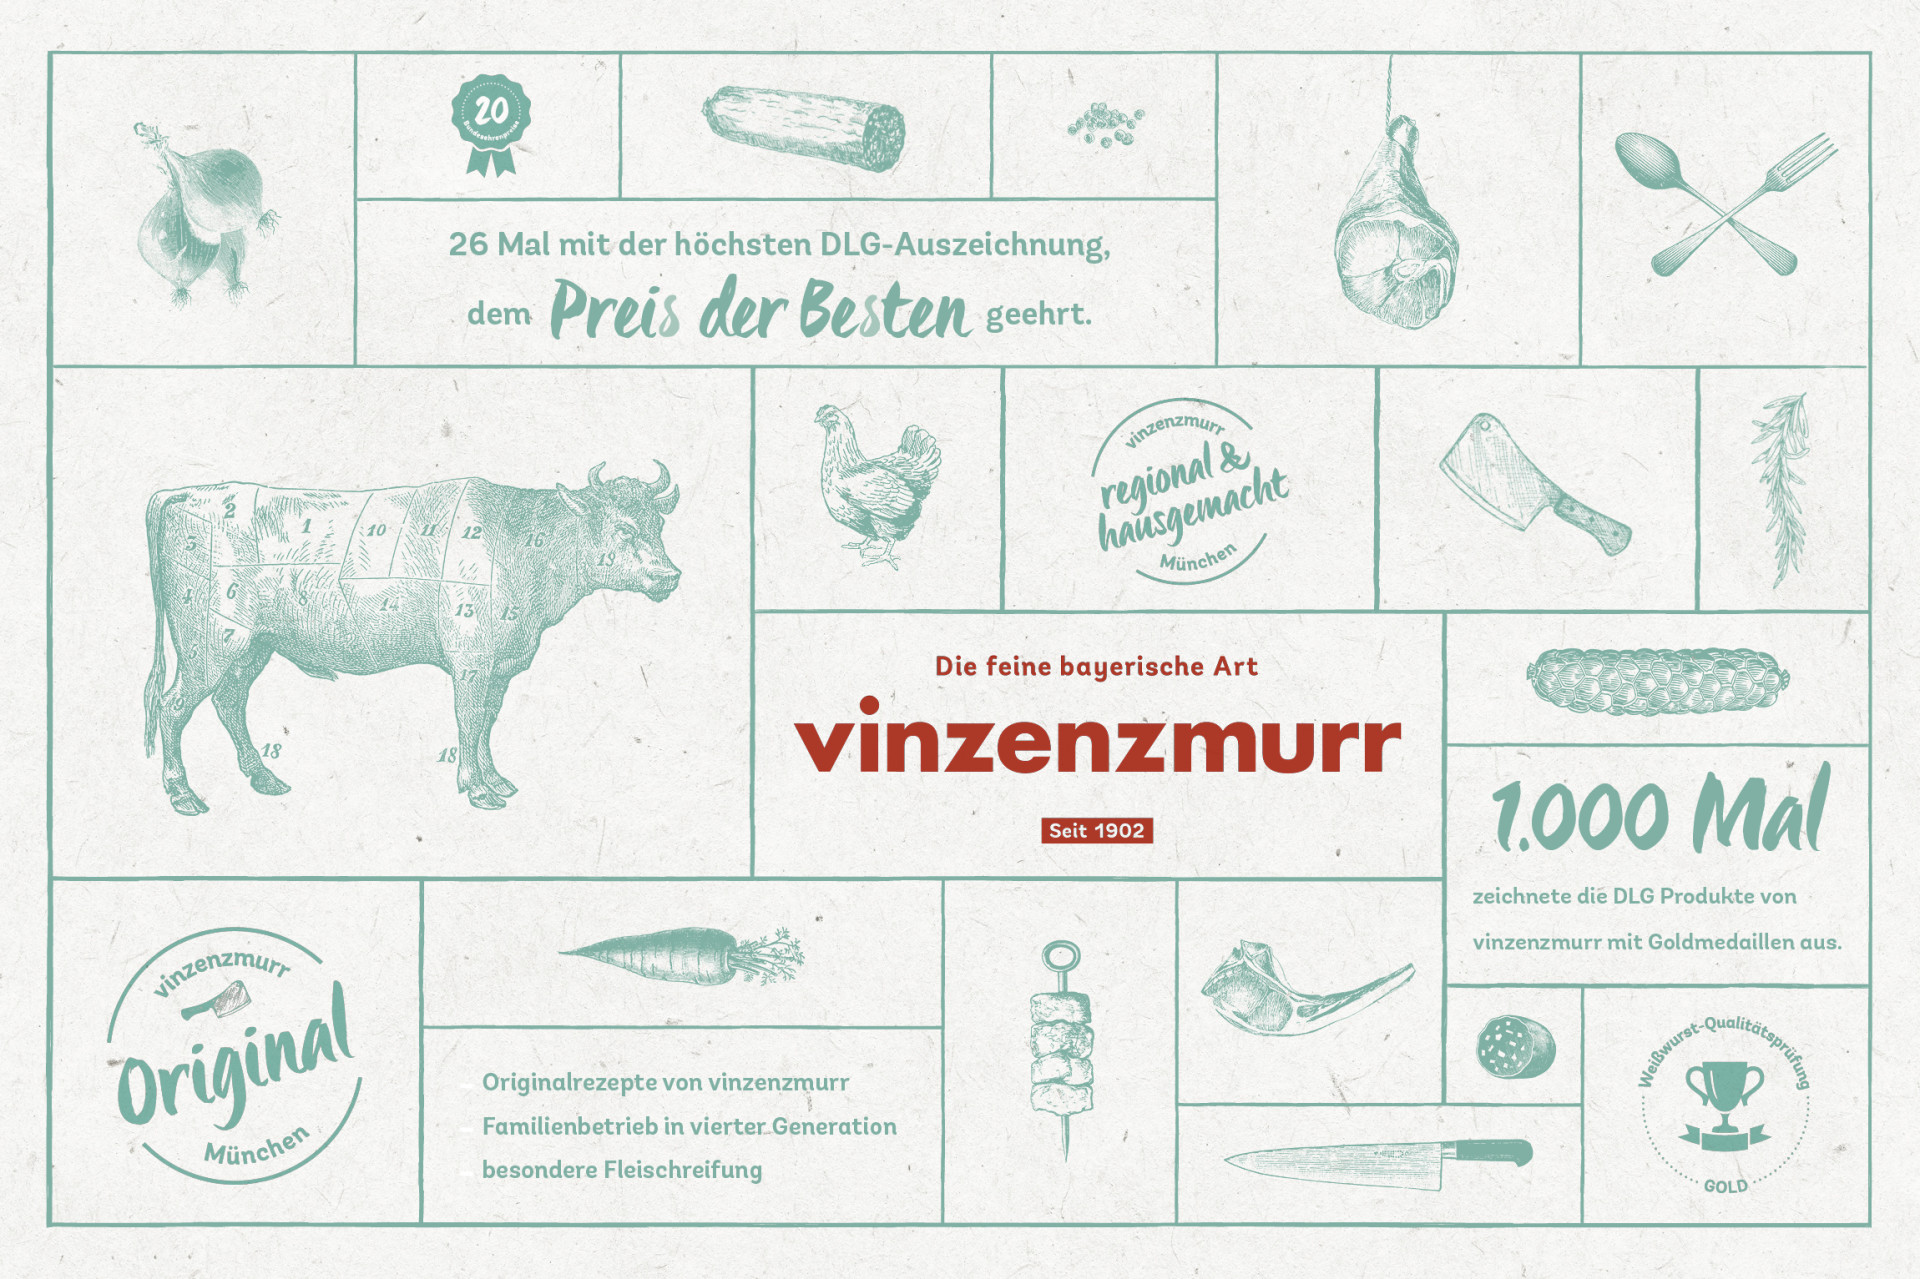 Vinzenzmurr – Brand Design und Ladenbaukonzept (1)